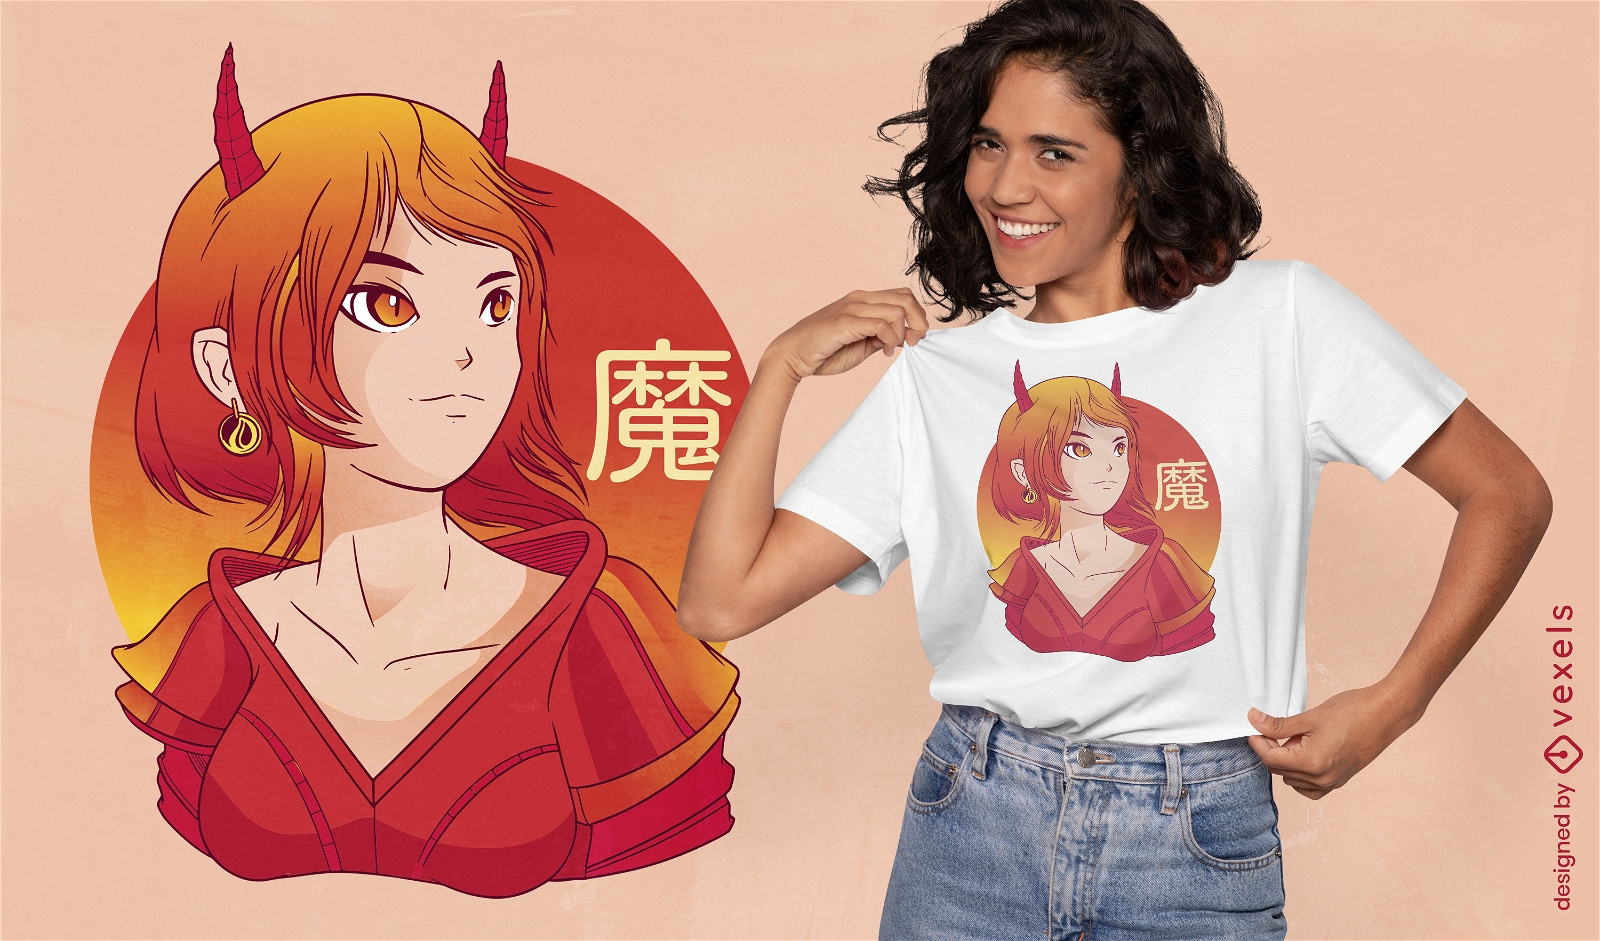 Japanese devil girl t-shirt design